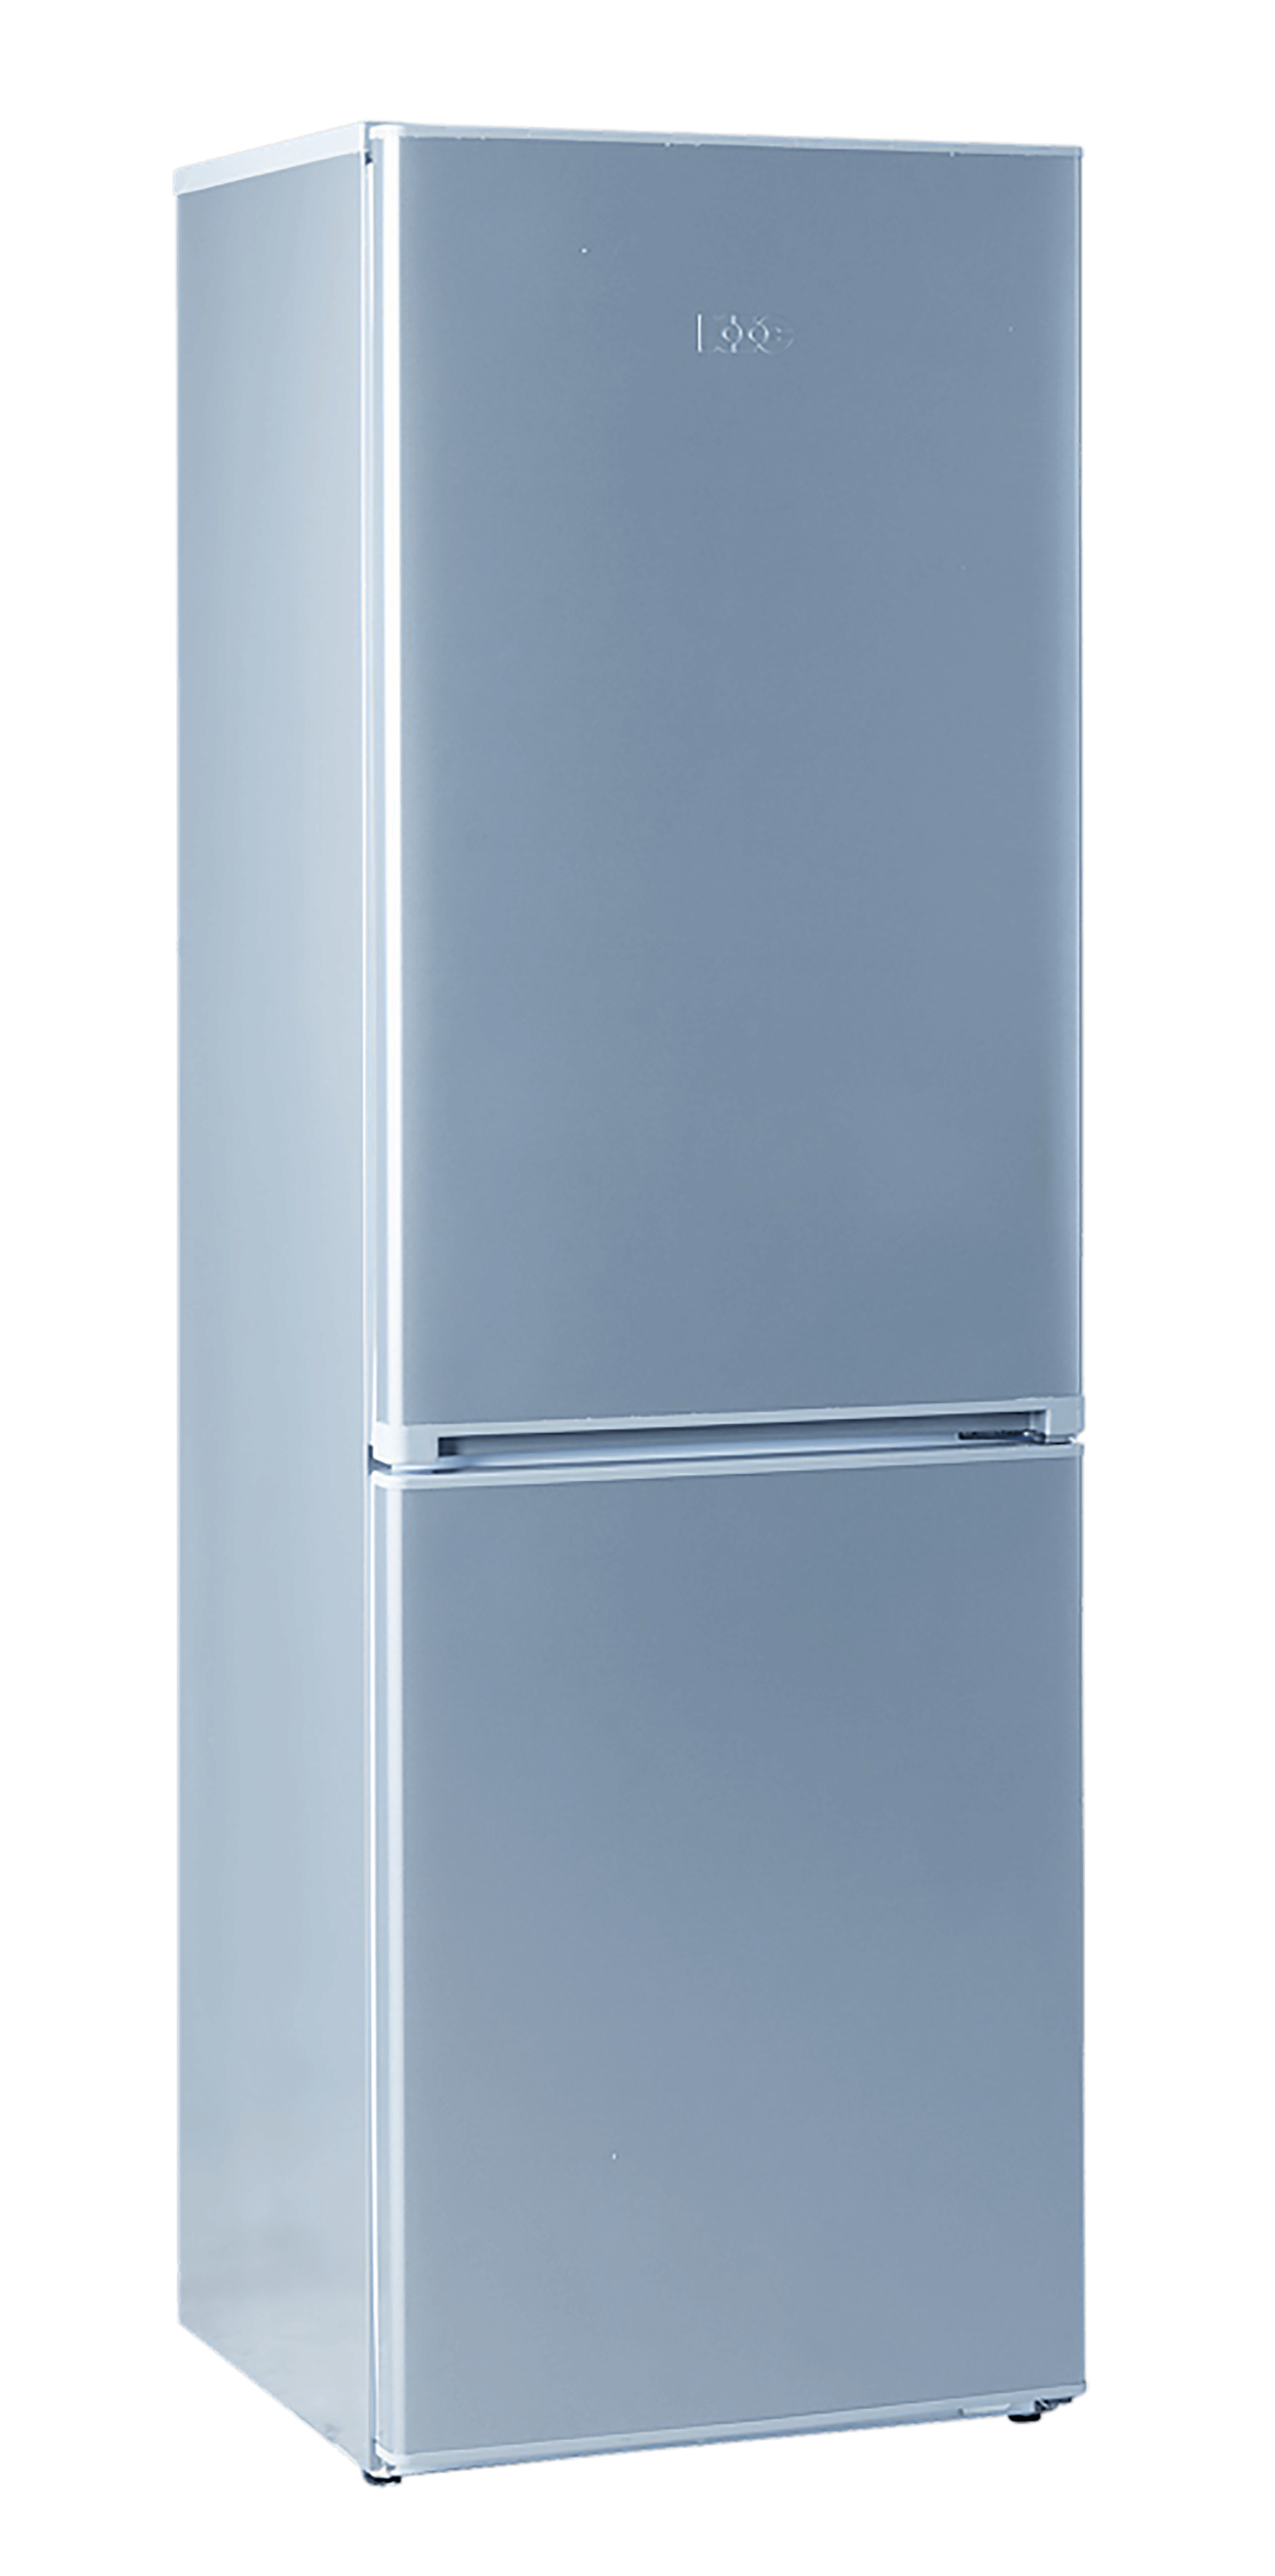 Dalawang pinto refrigerator PNG File